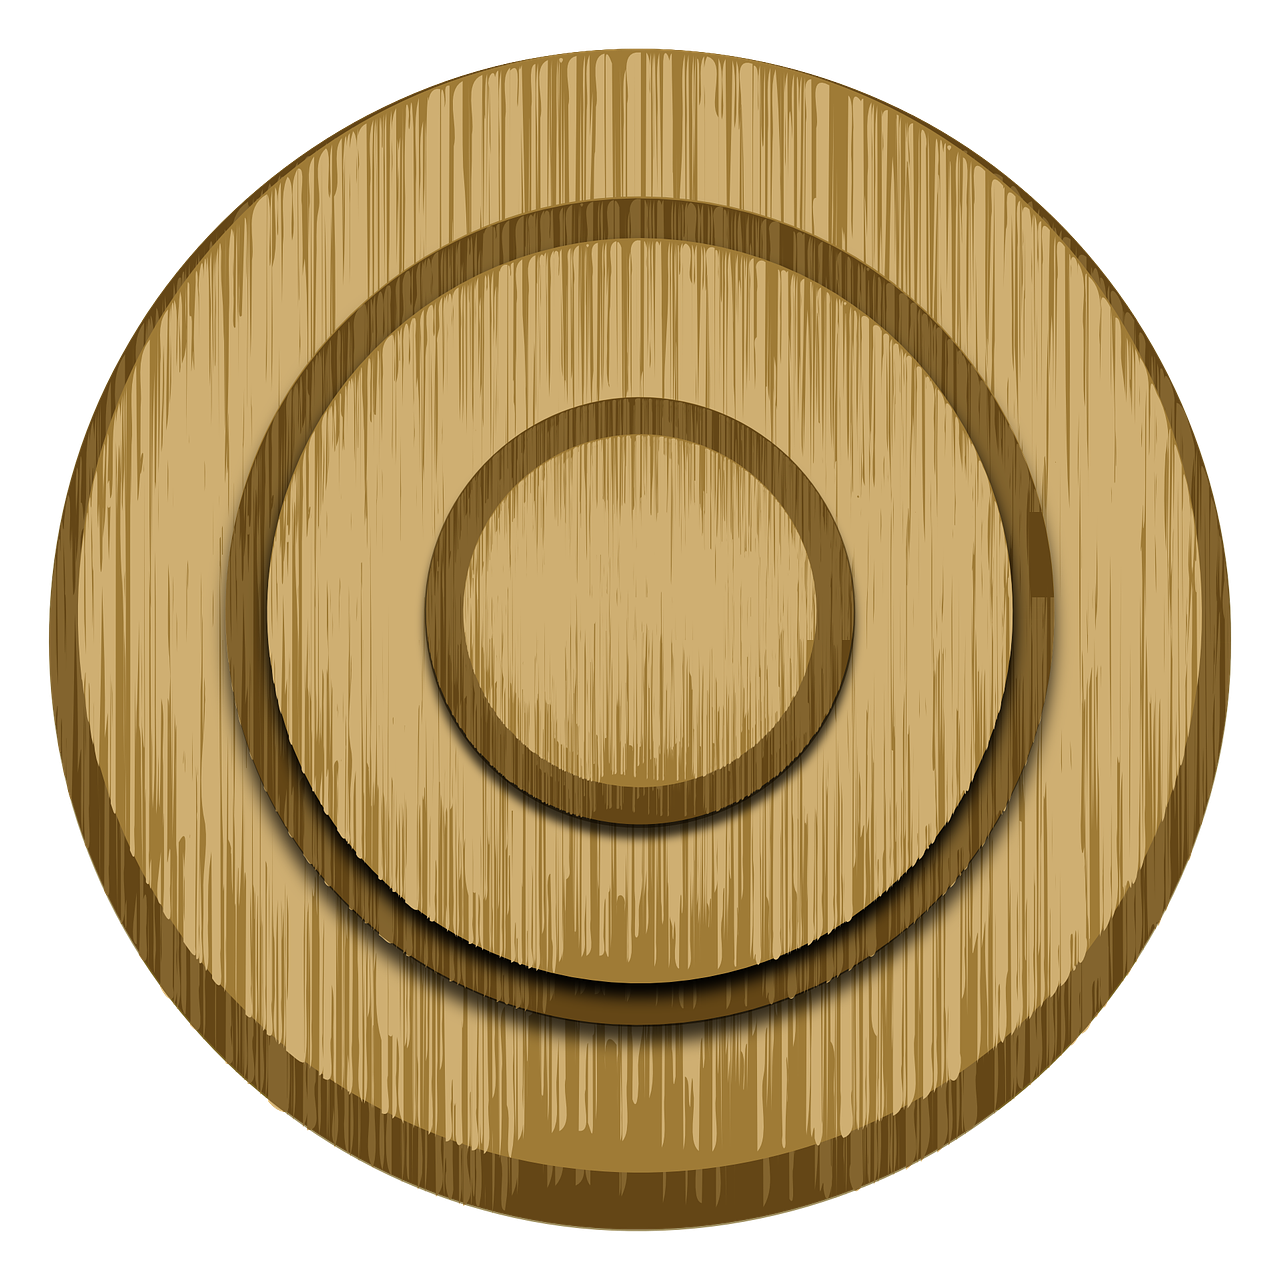 wooden circle target free photo